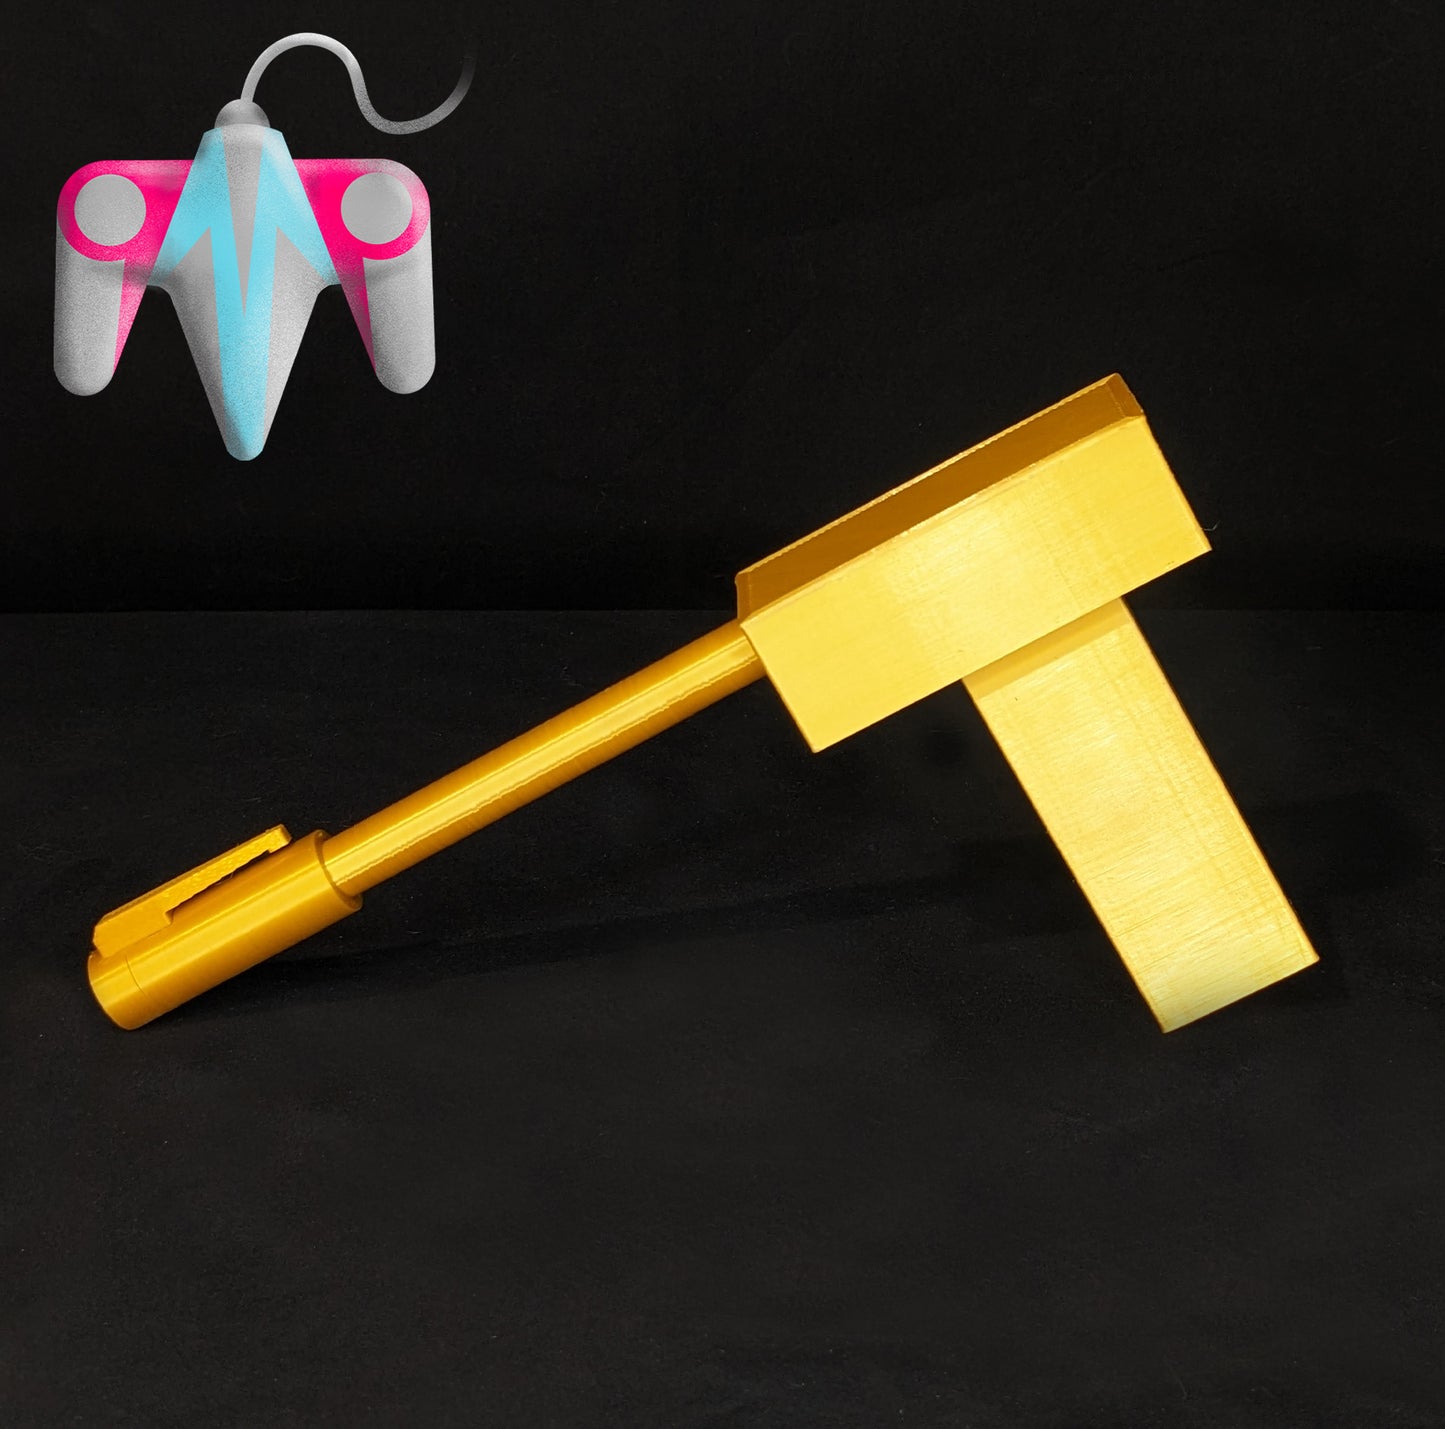 3D Printed Golden Gun